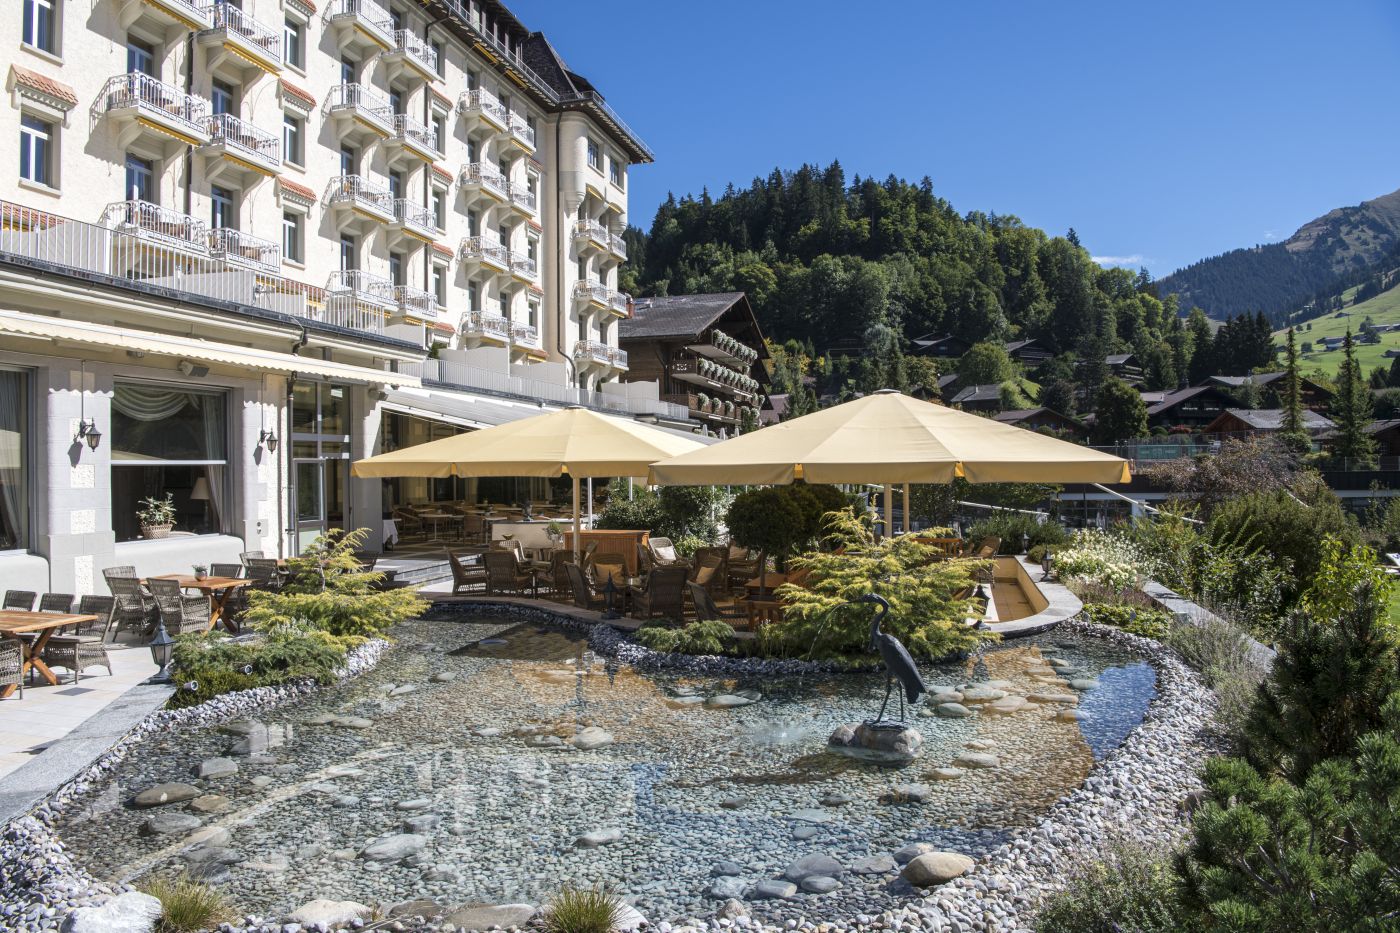 Facade of luxury wedding resort in Gstaad